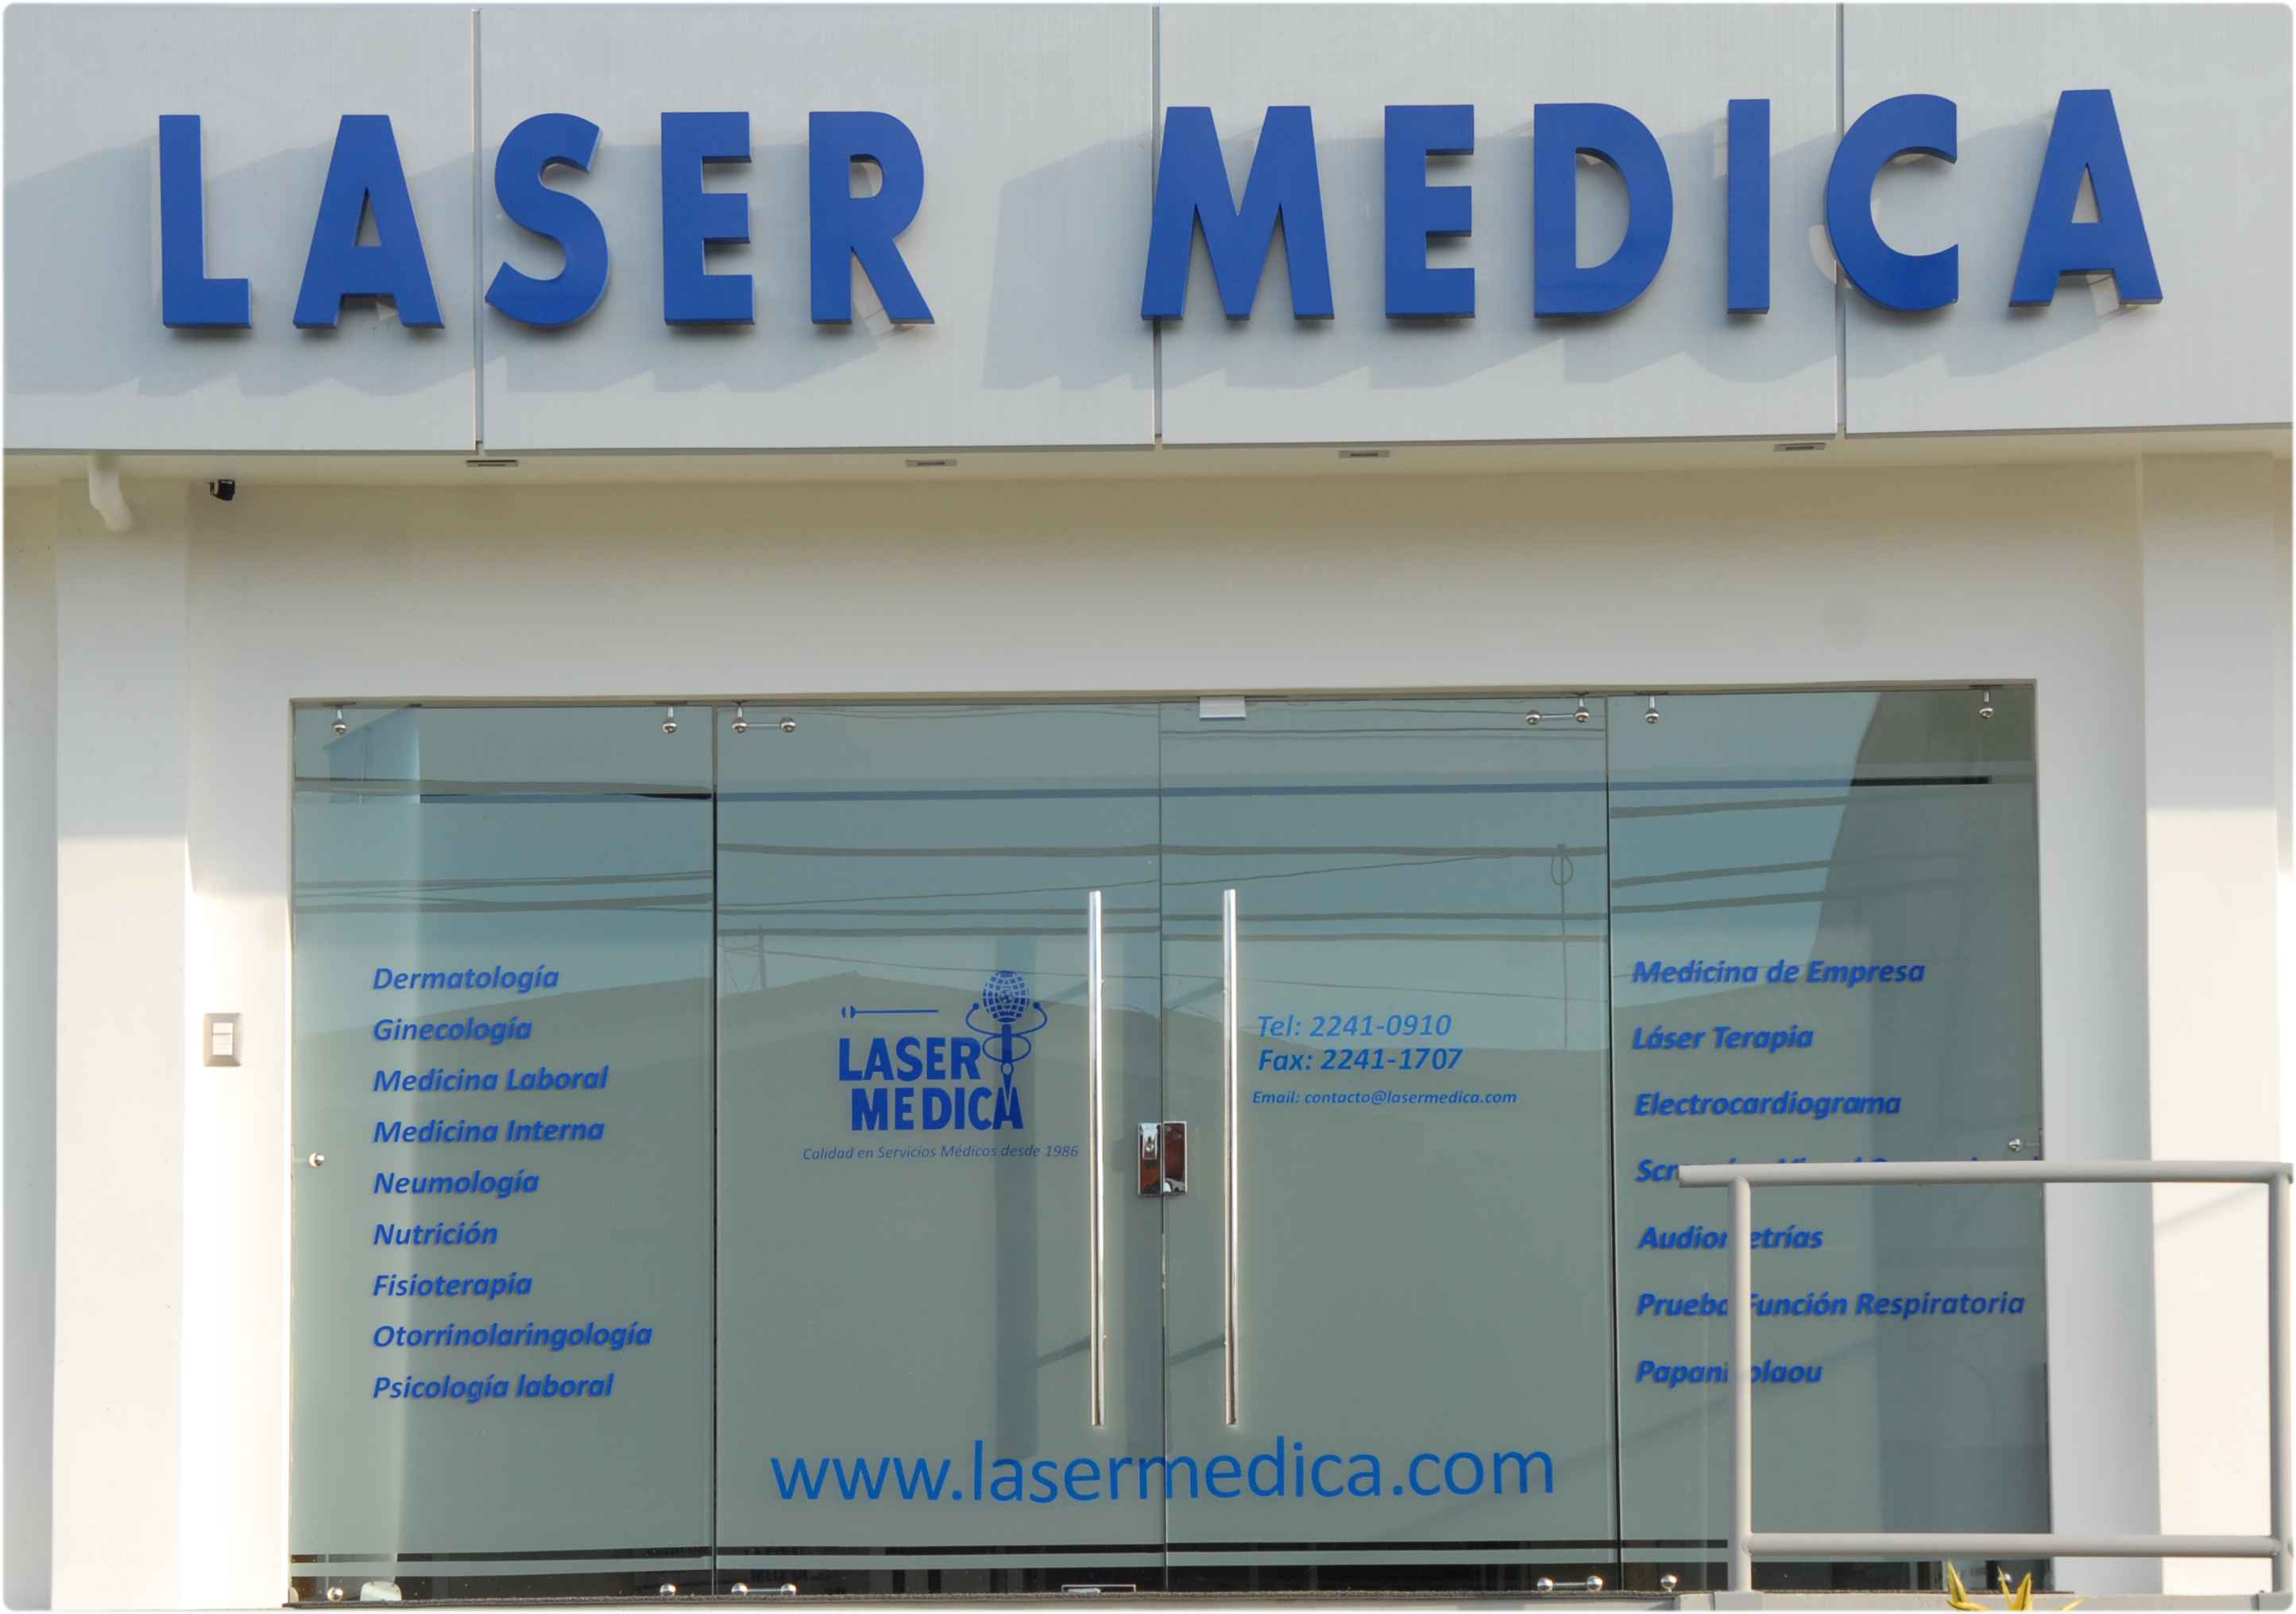 Laser medica Costa Rica